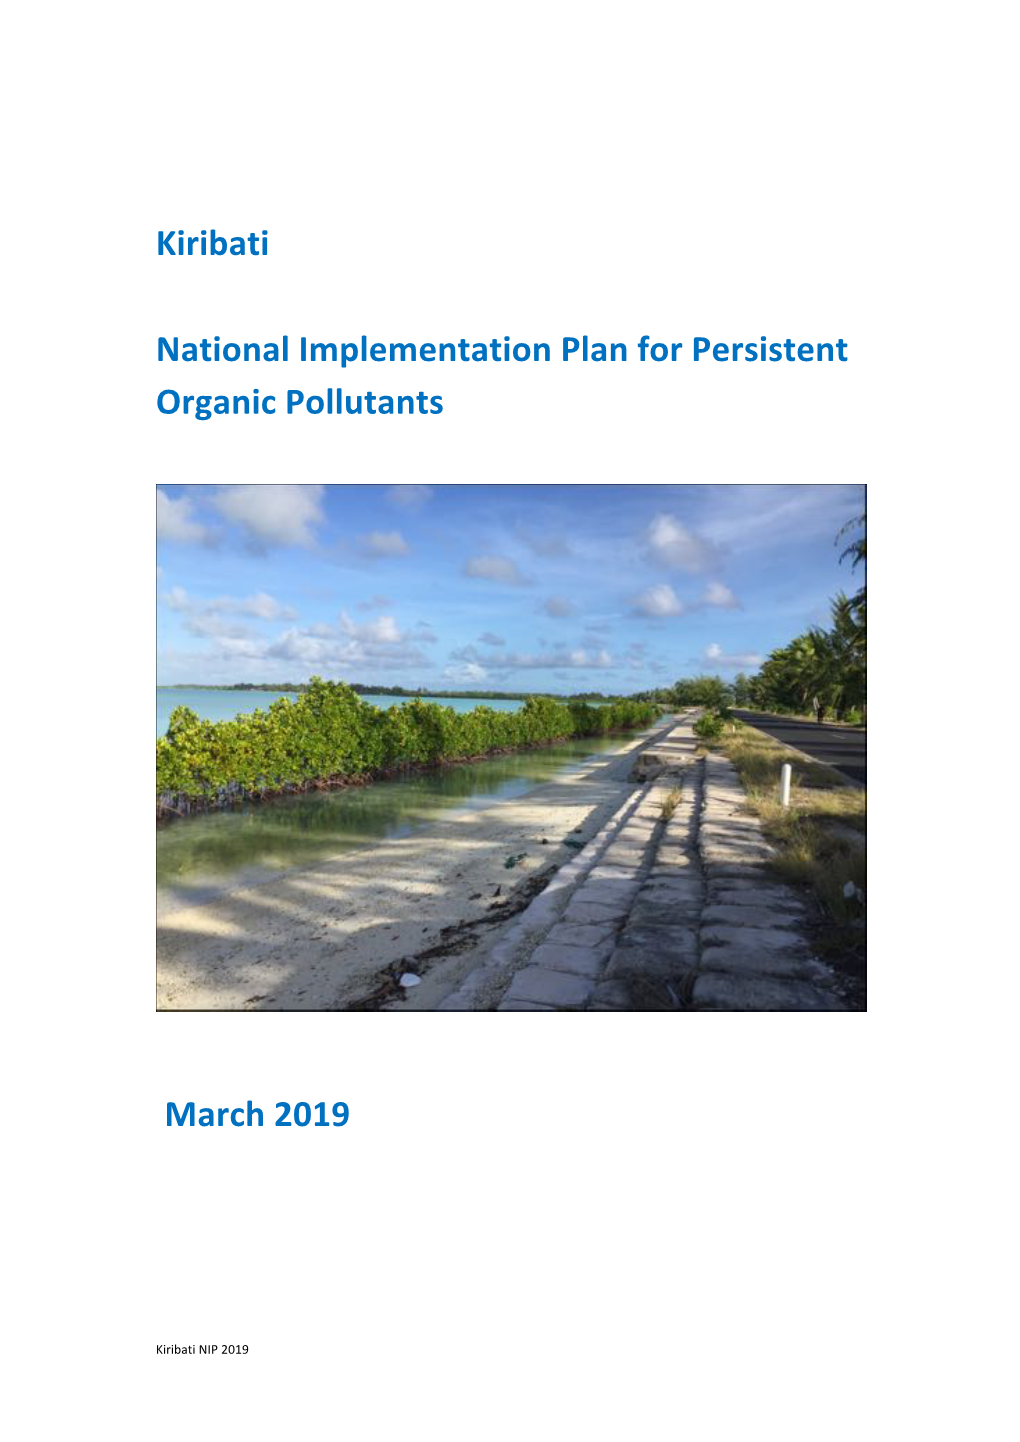 Kiribati National Implementation Plan for Persistent Organic Pollutants